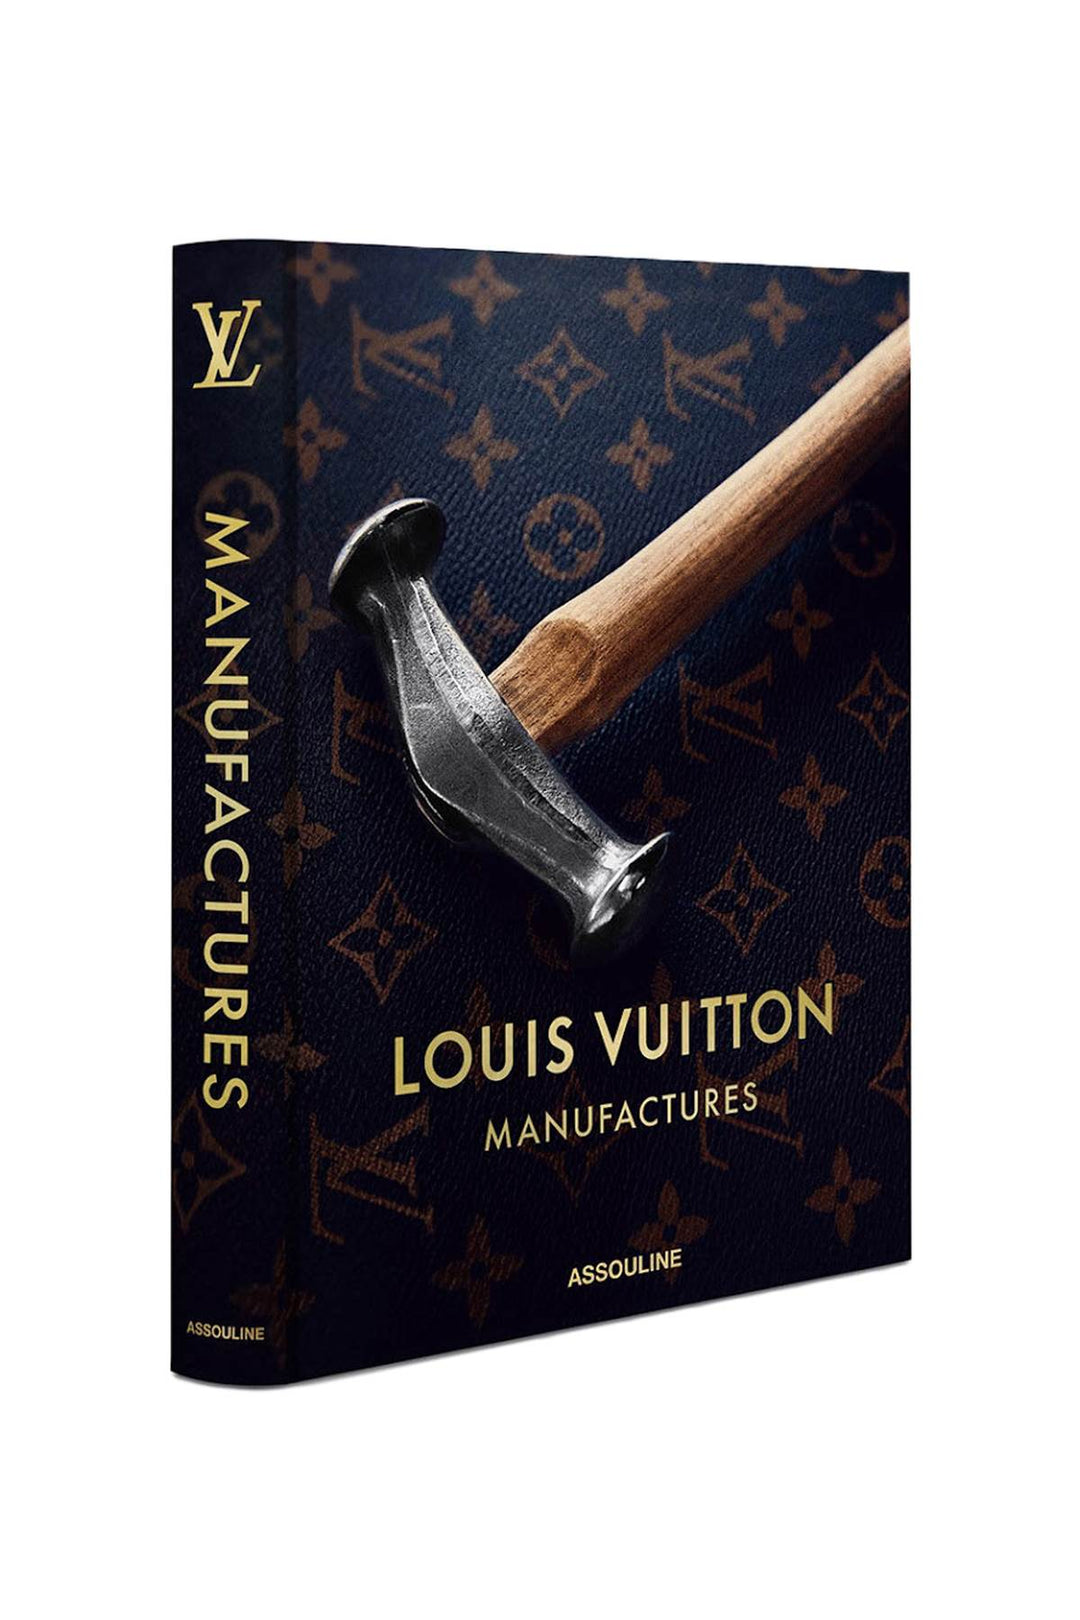 Louis Vuitton Manufactures - Assouline - CLT